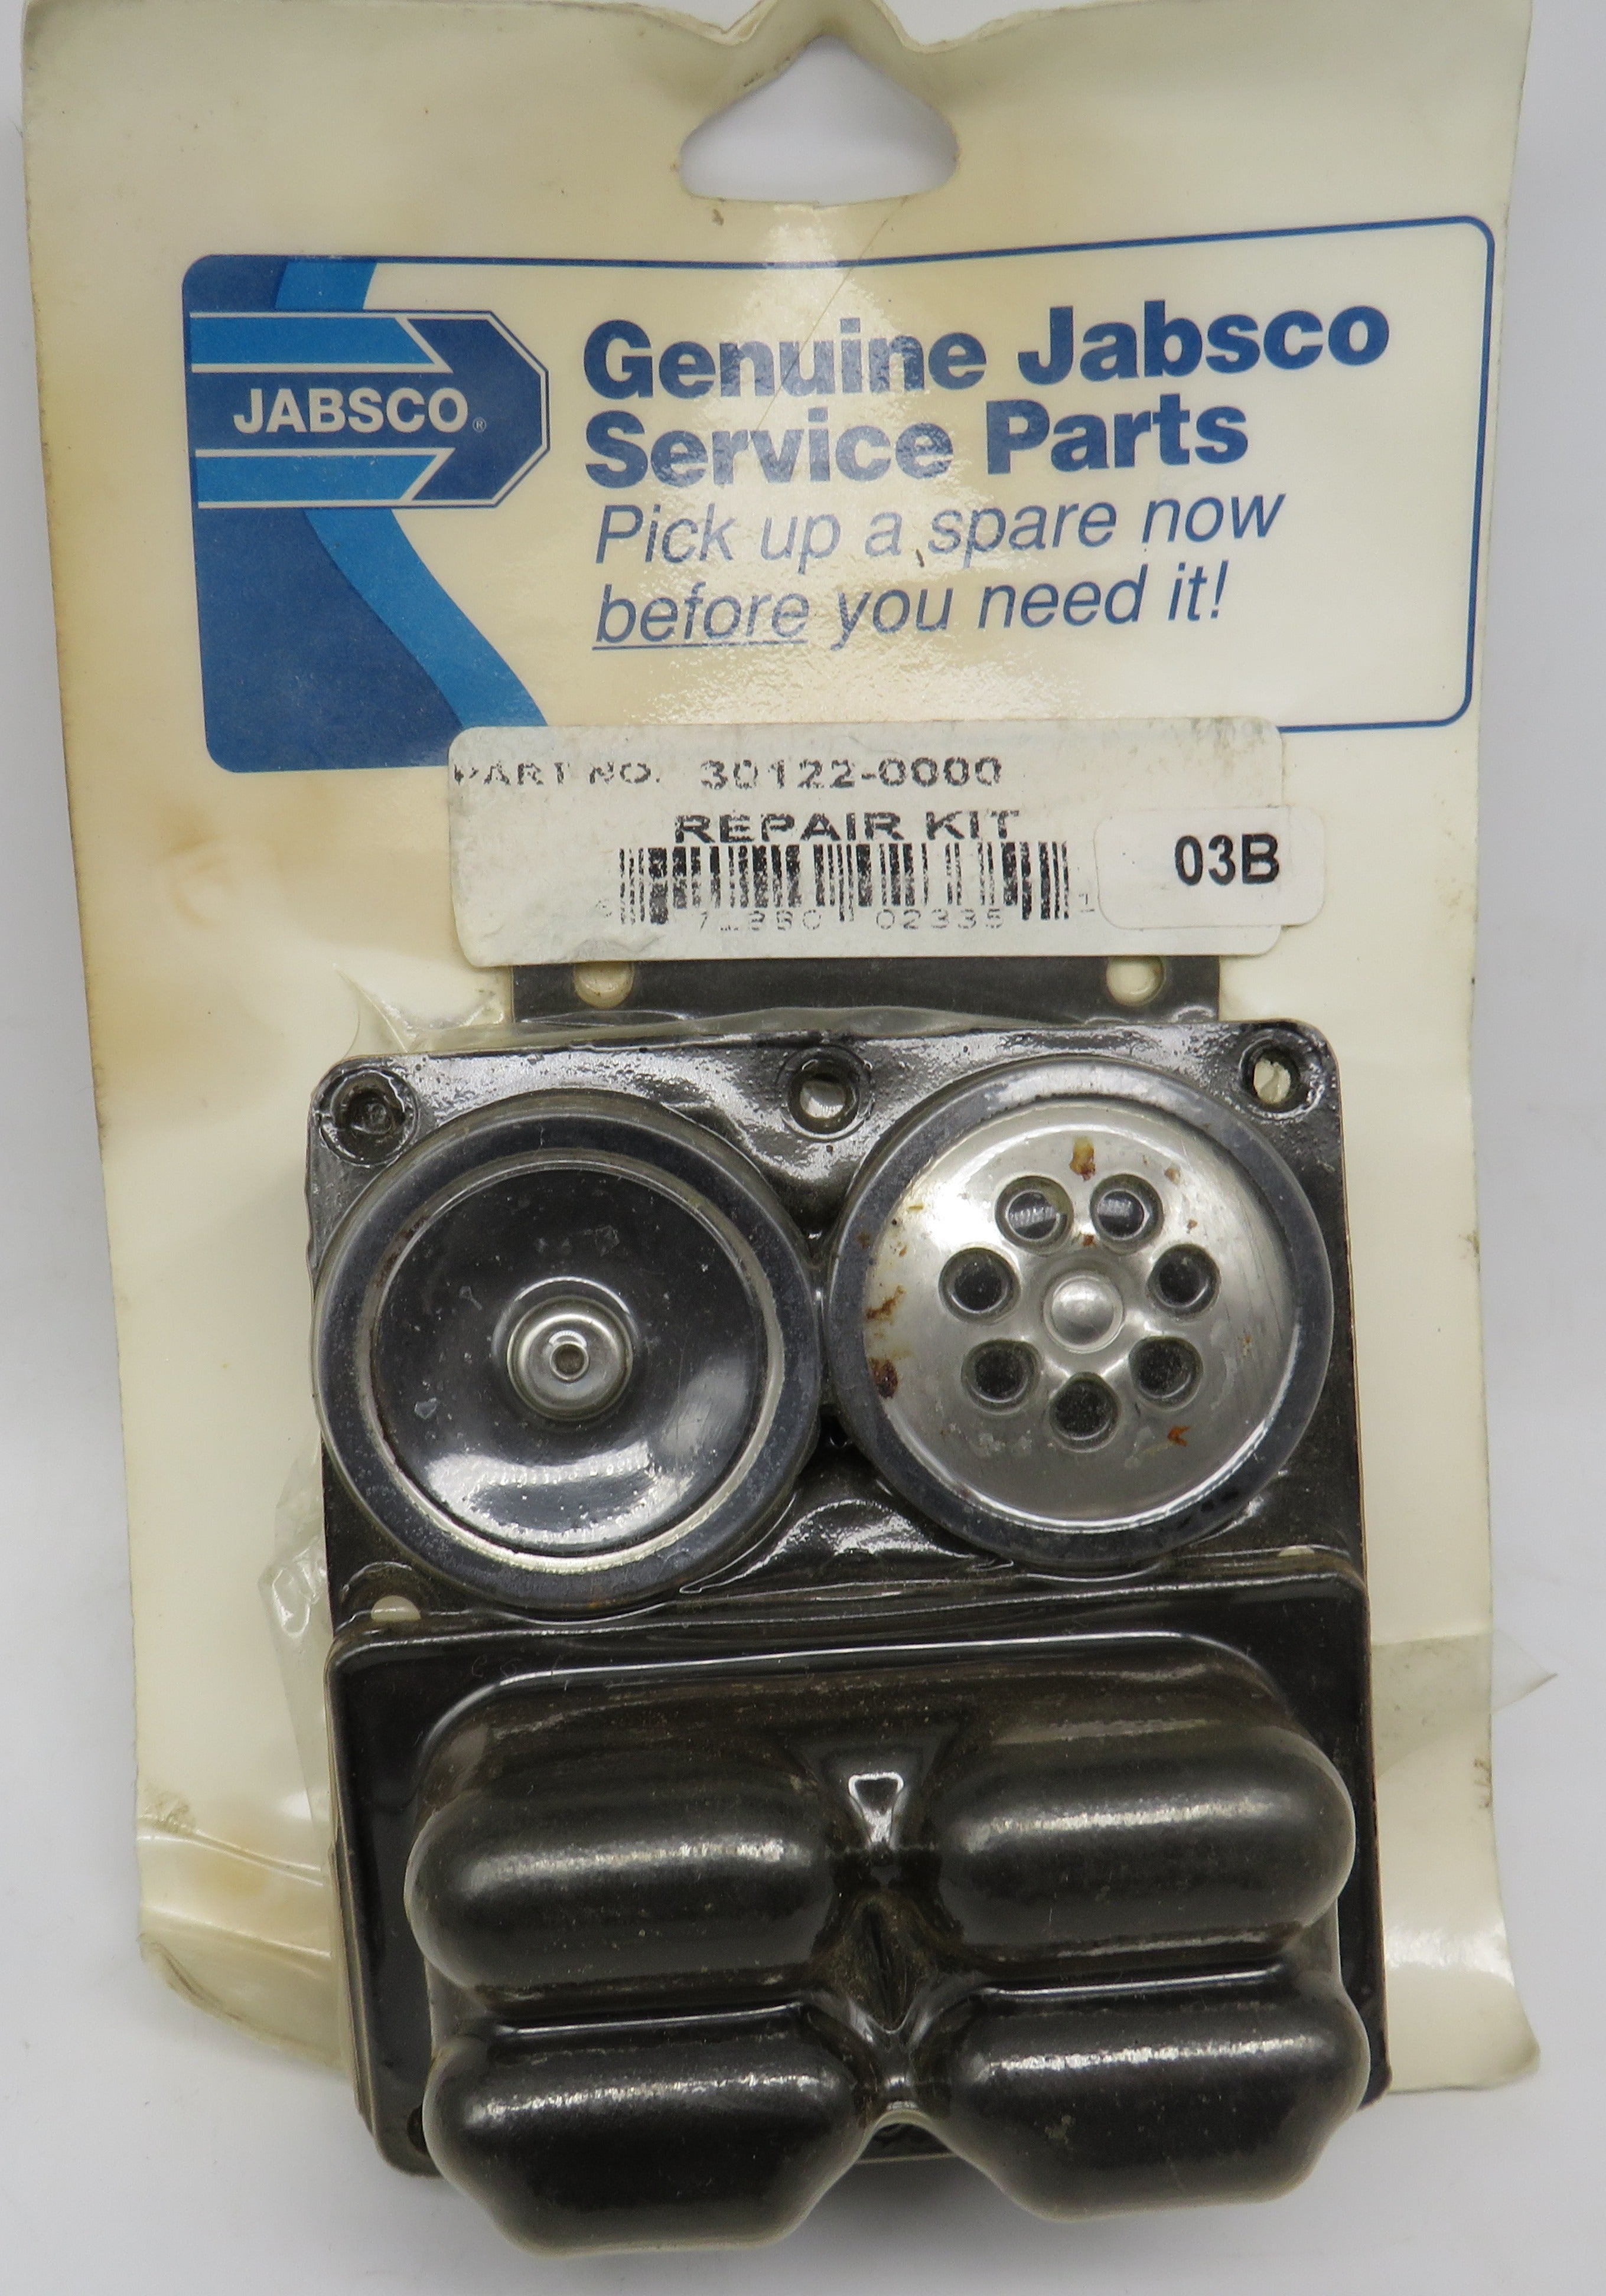 30122-0000 Jabsco Par Overhaul Service Repair Kit For 36800 Pumps